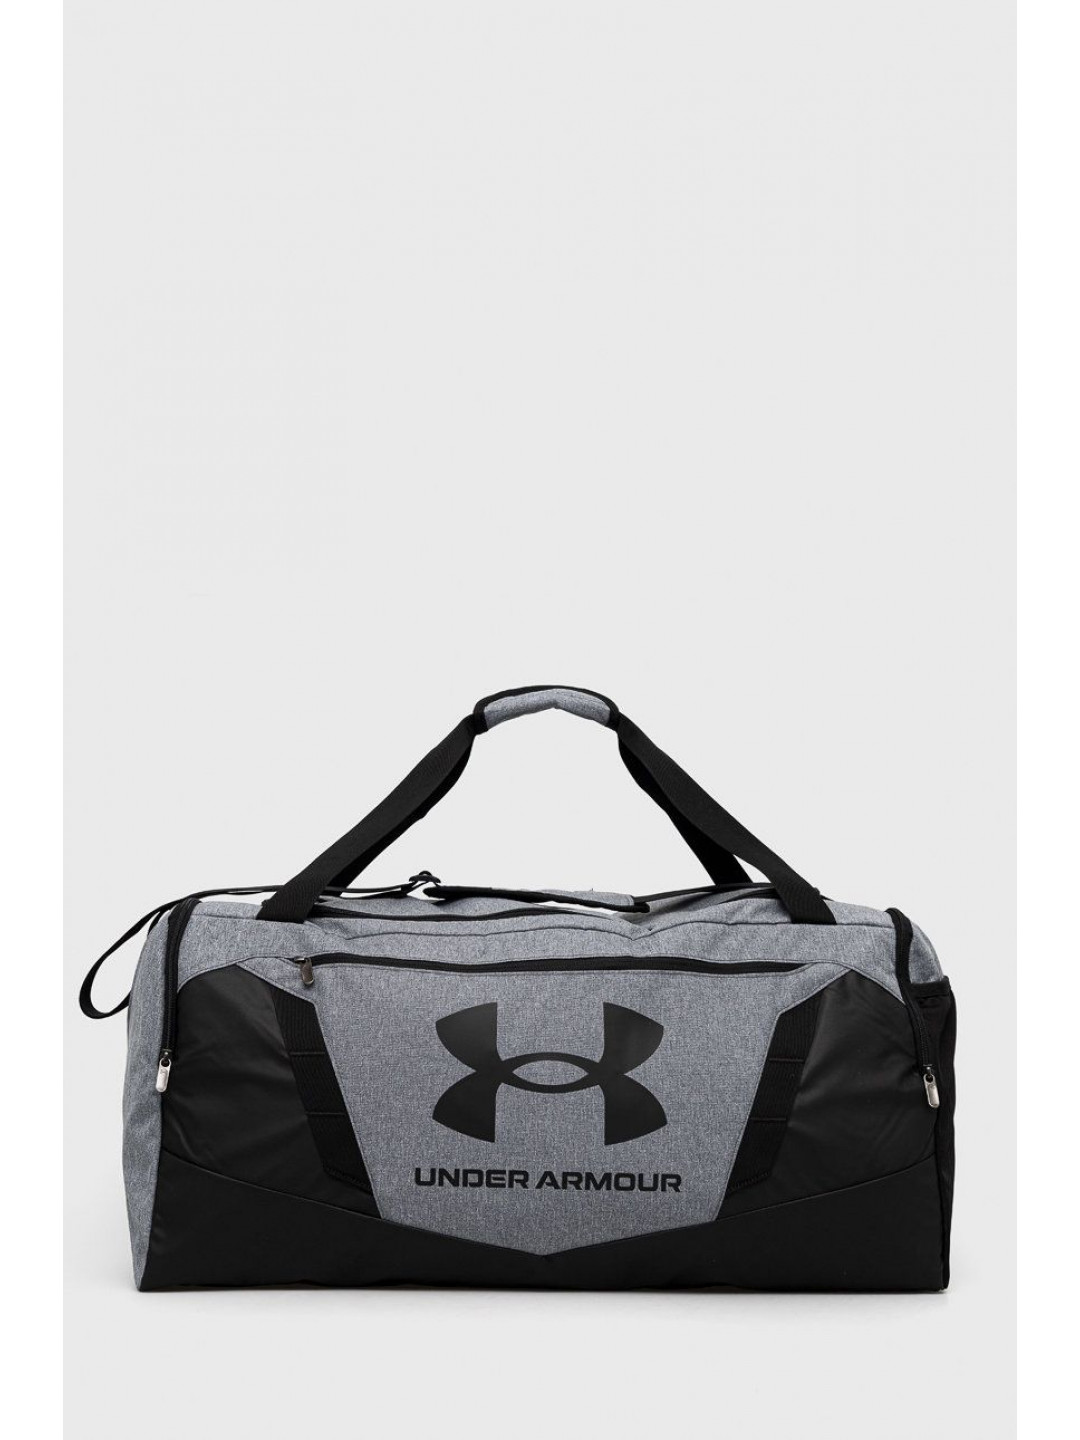 Sportovní taška Under Armour Undeniable 5 0 Large šedá barva